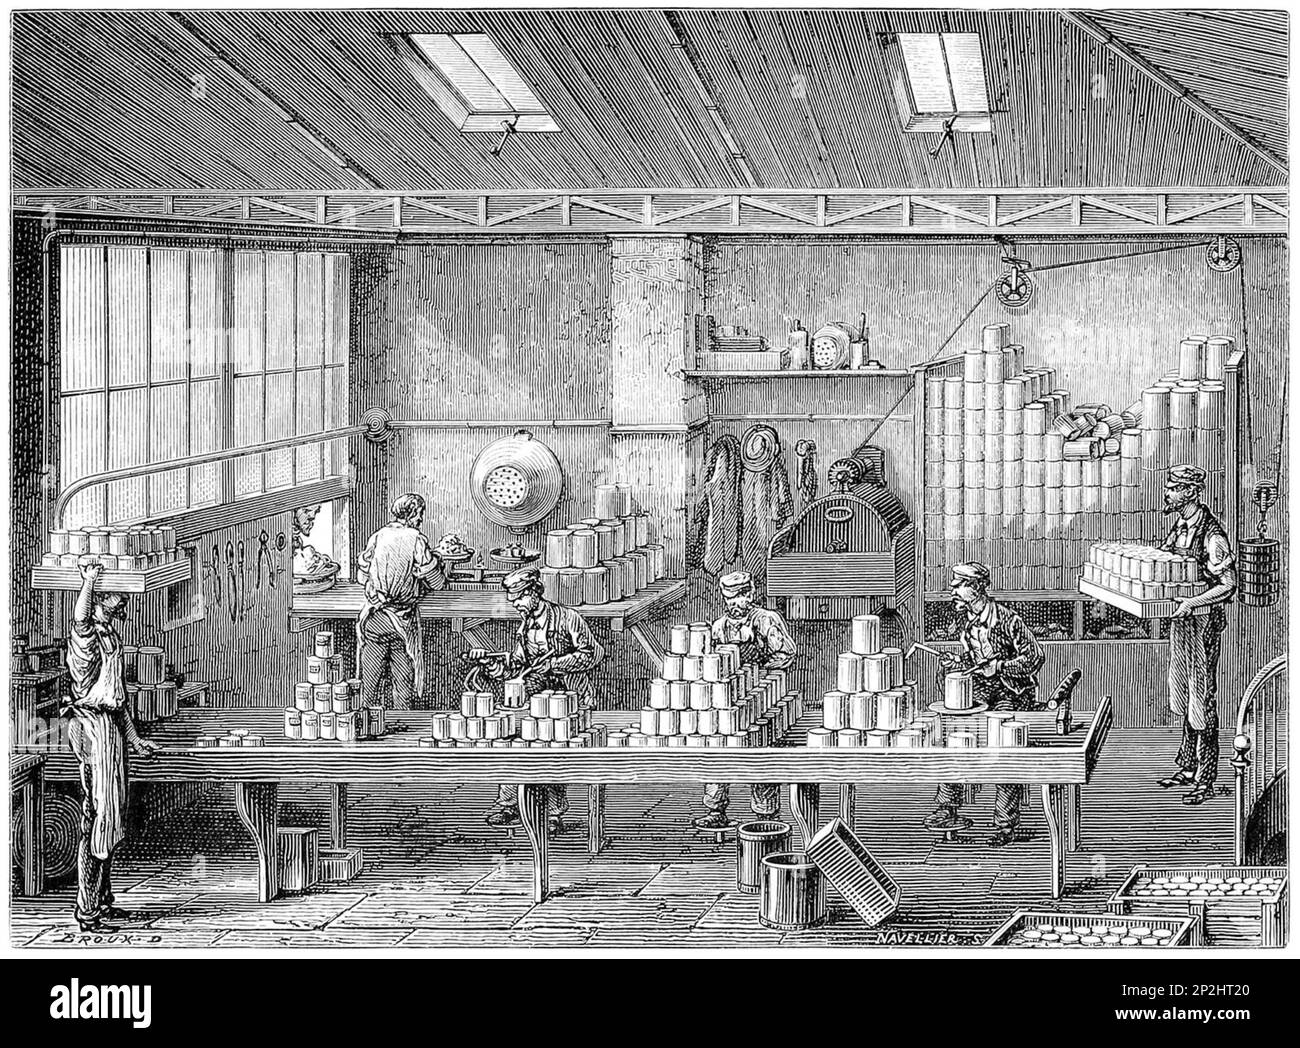 Incisione di uomini di saldatura lattine di conserve alimentari, fine 1800s Foto Stock